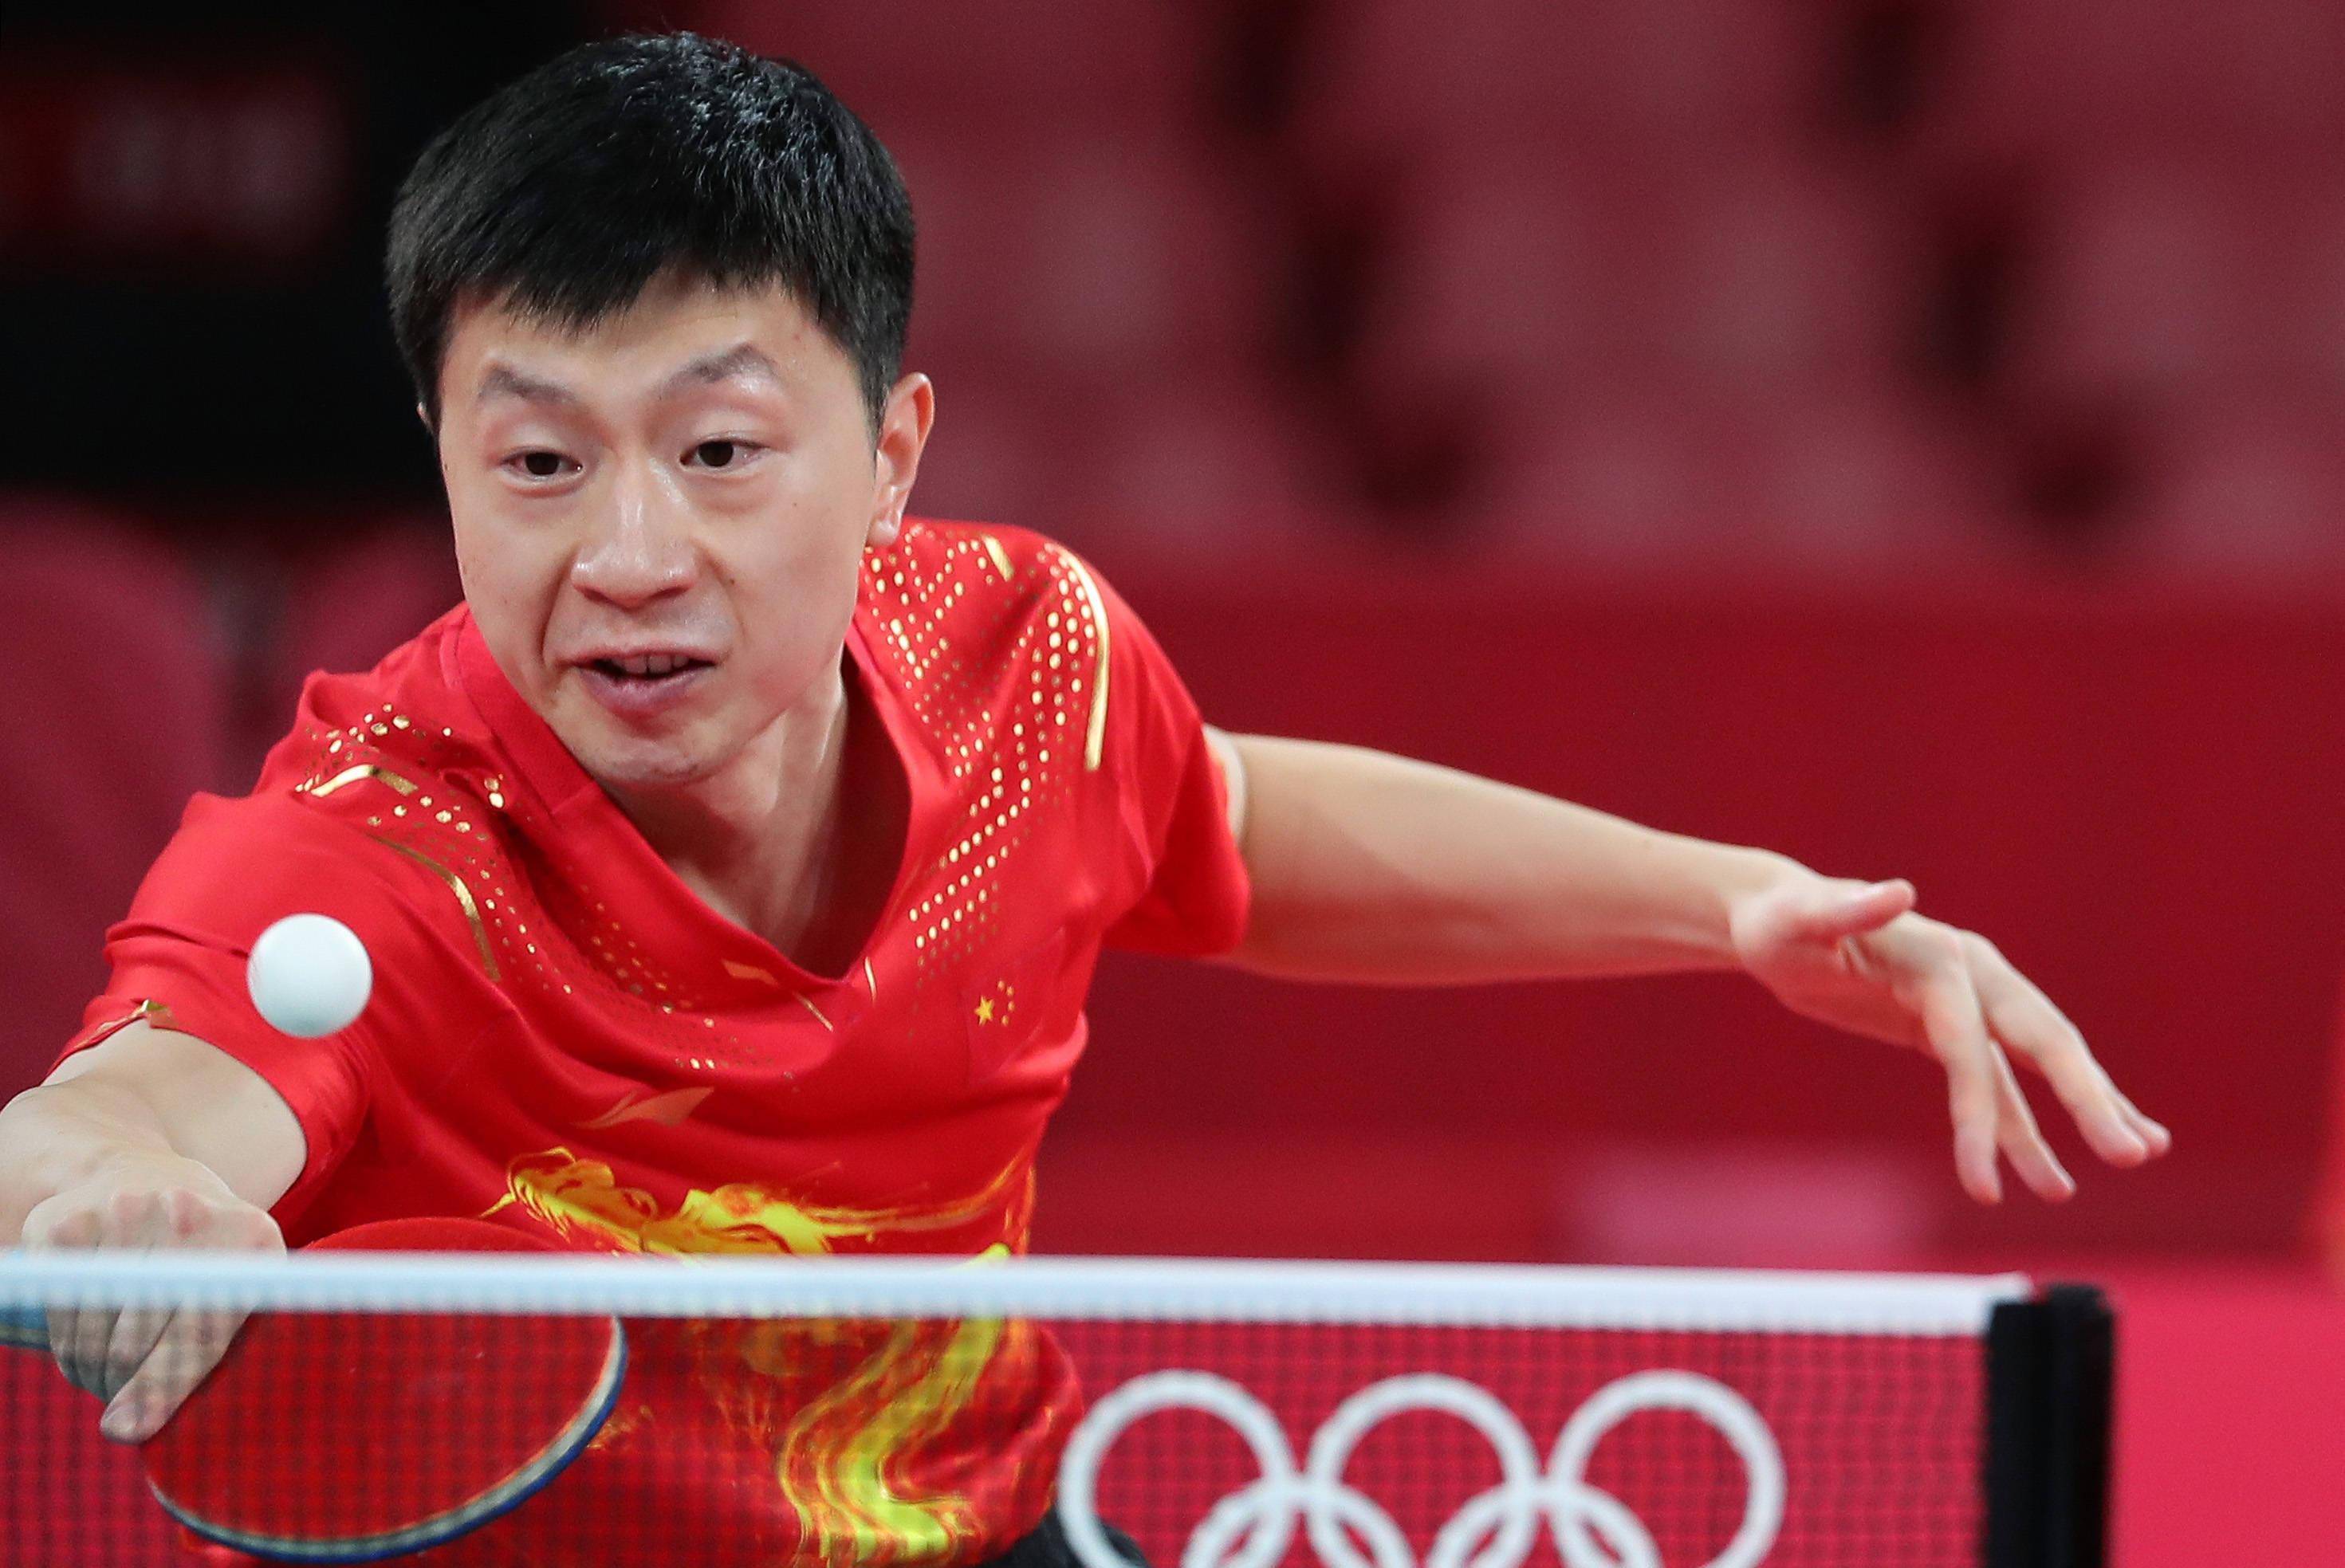 中国乒乓球运动员排行榜,大魔王张怡宁只能位居第十,你认可吗?